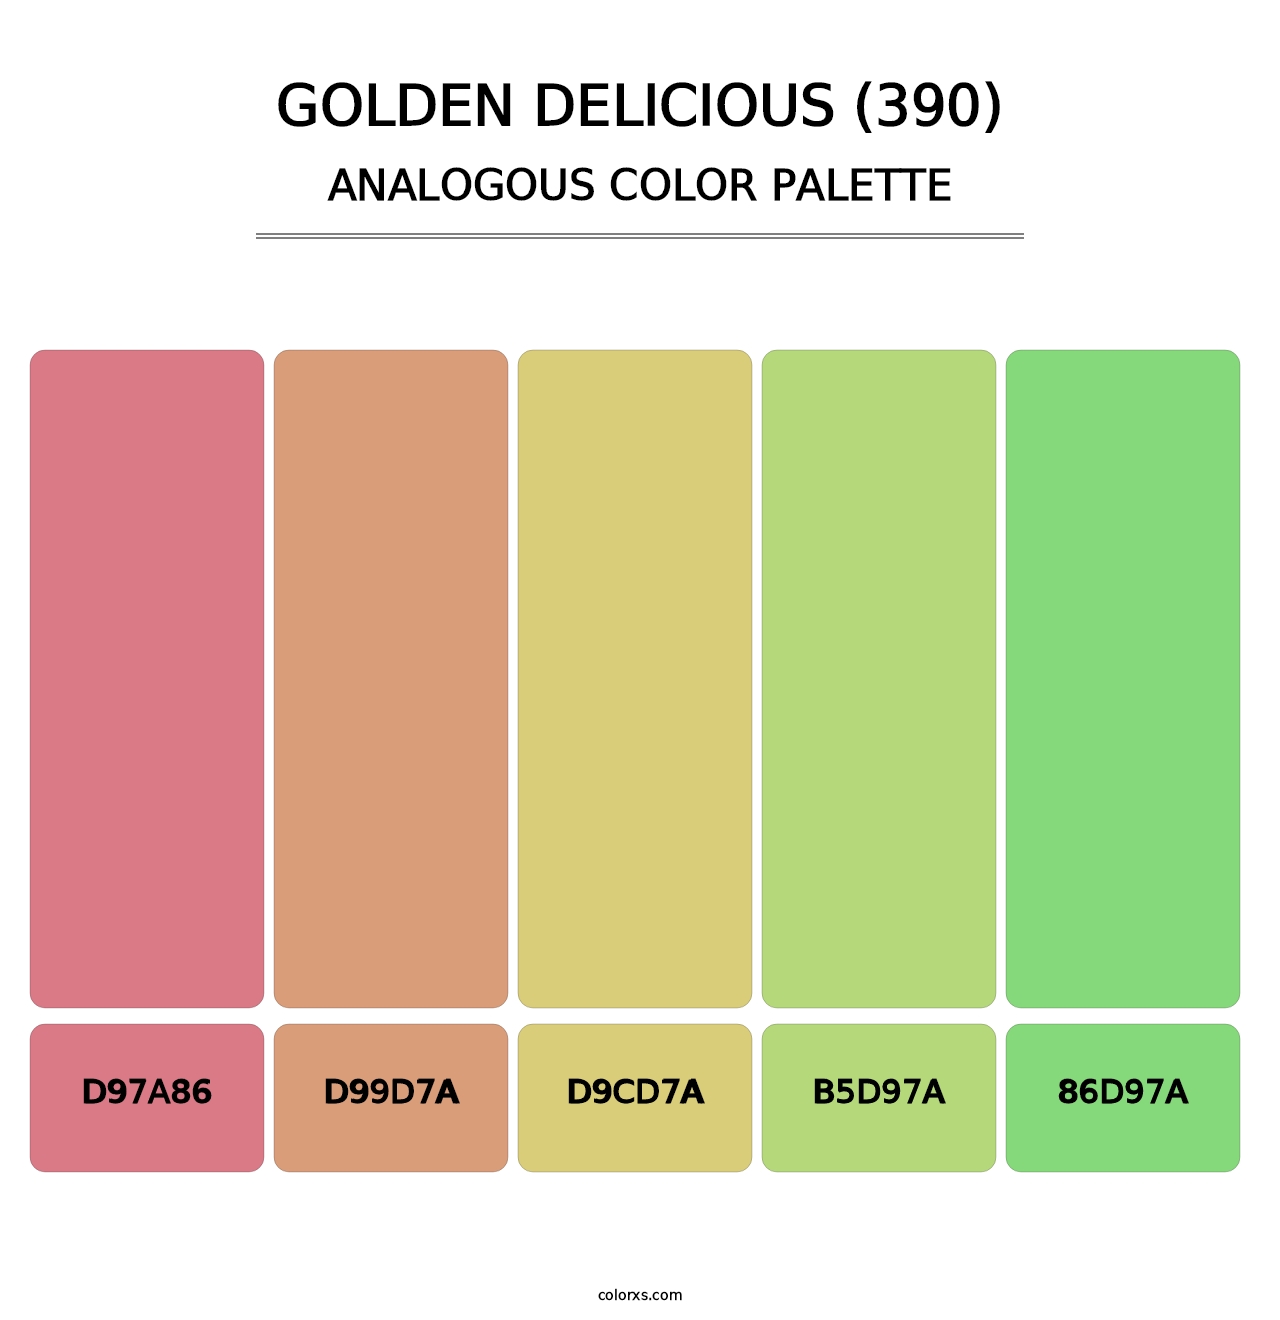 Golden Delicious (390) - Analogous Color Palette